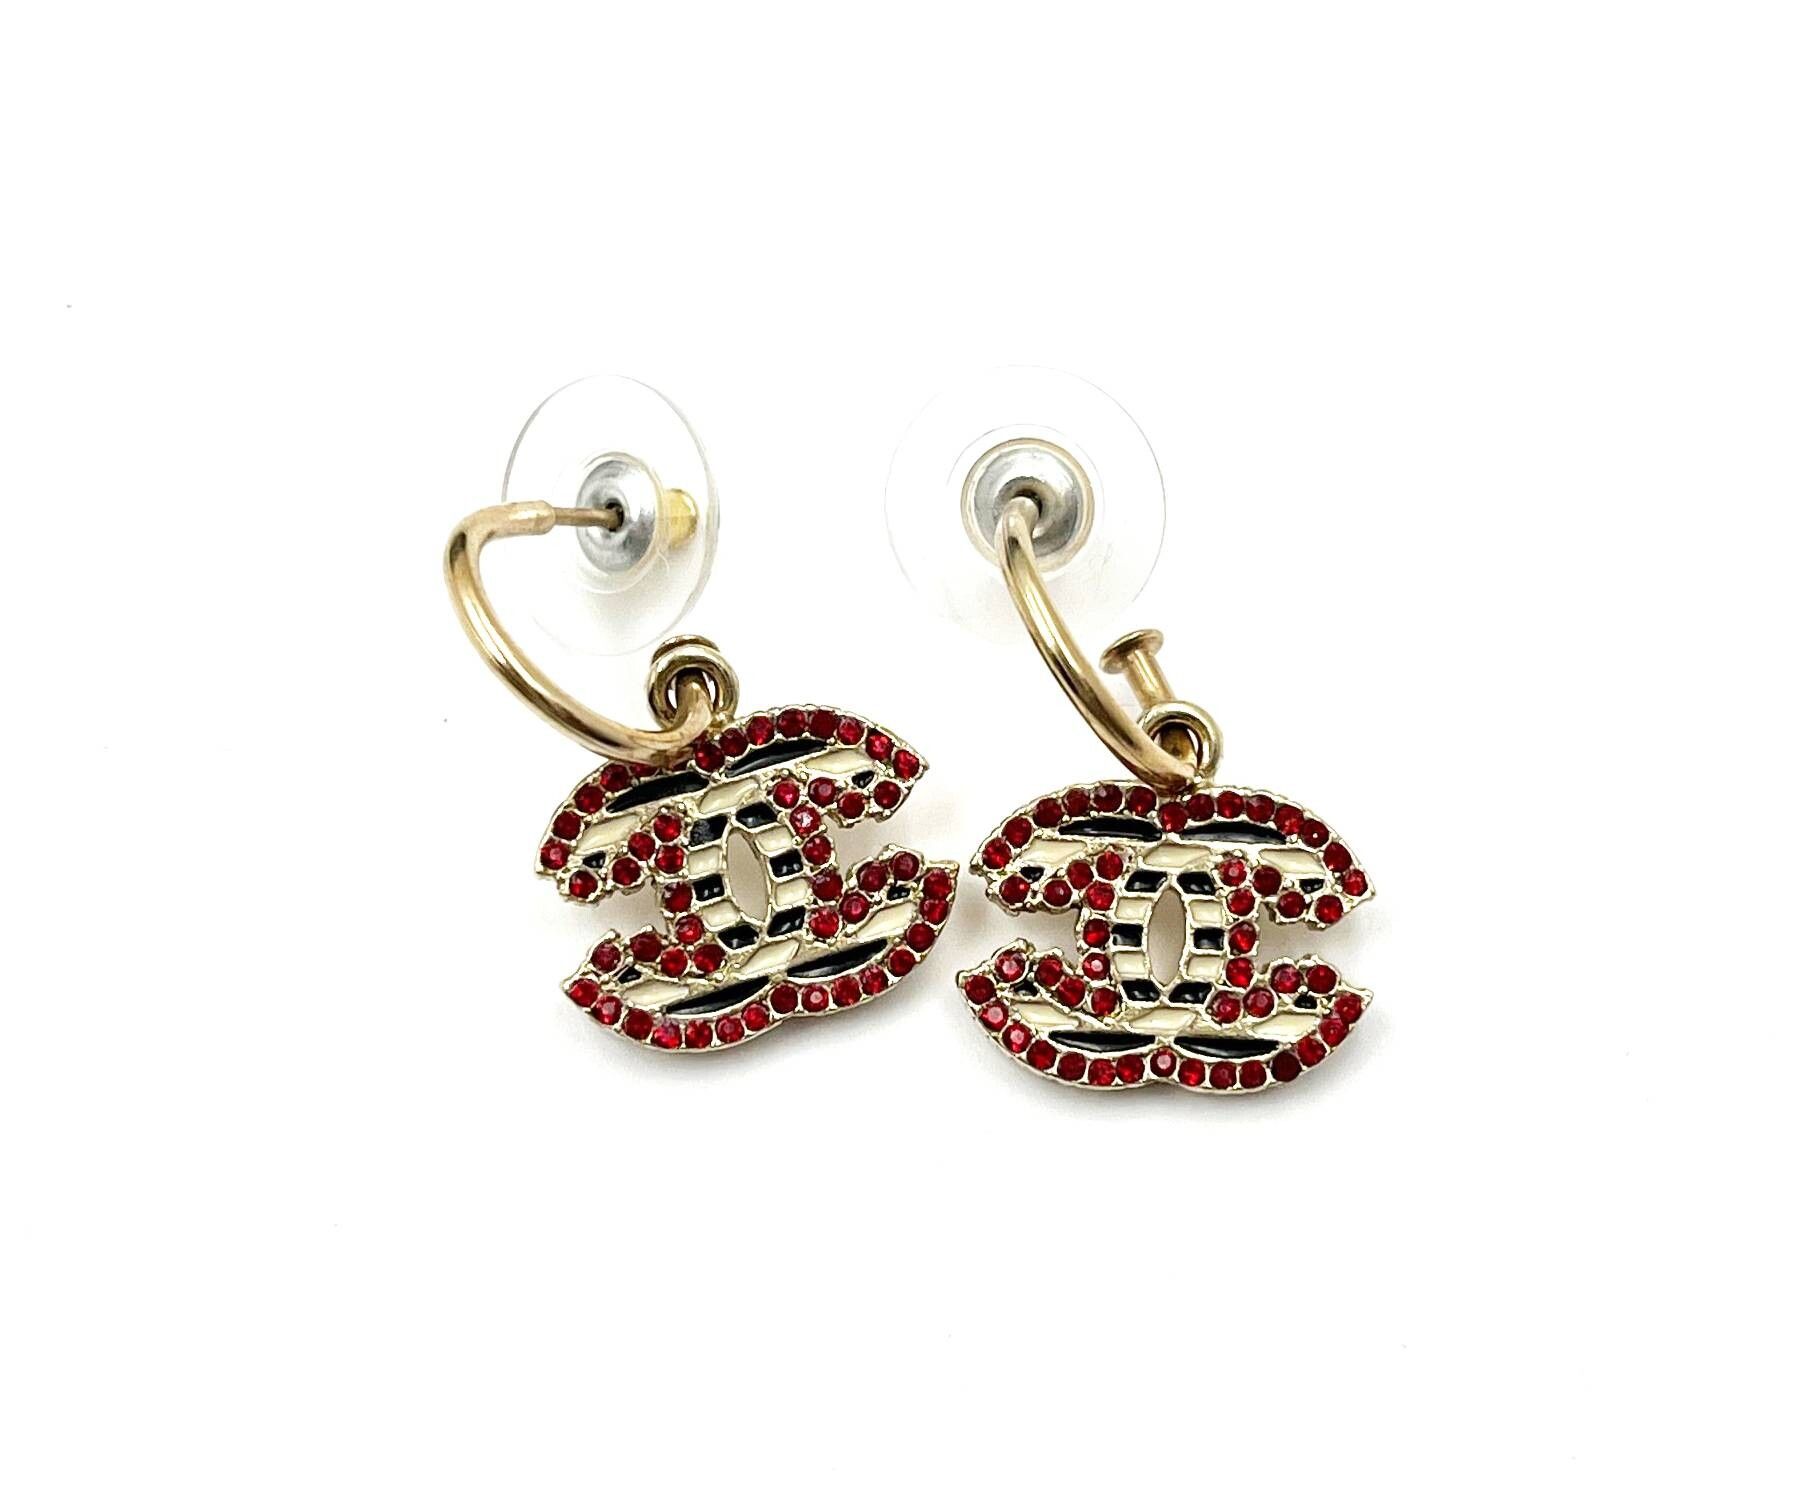 Chanel Gold Drop Earrings - 149 For Sale on 1stDibs  chanel drop earrings,  chanel earrings, chanel gold drop cc earrings